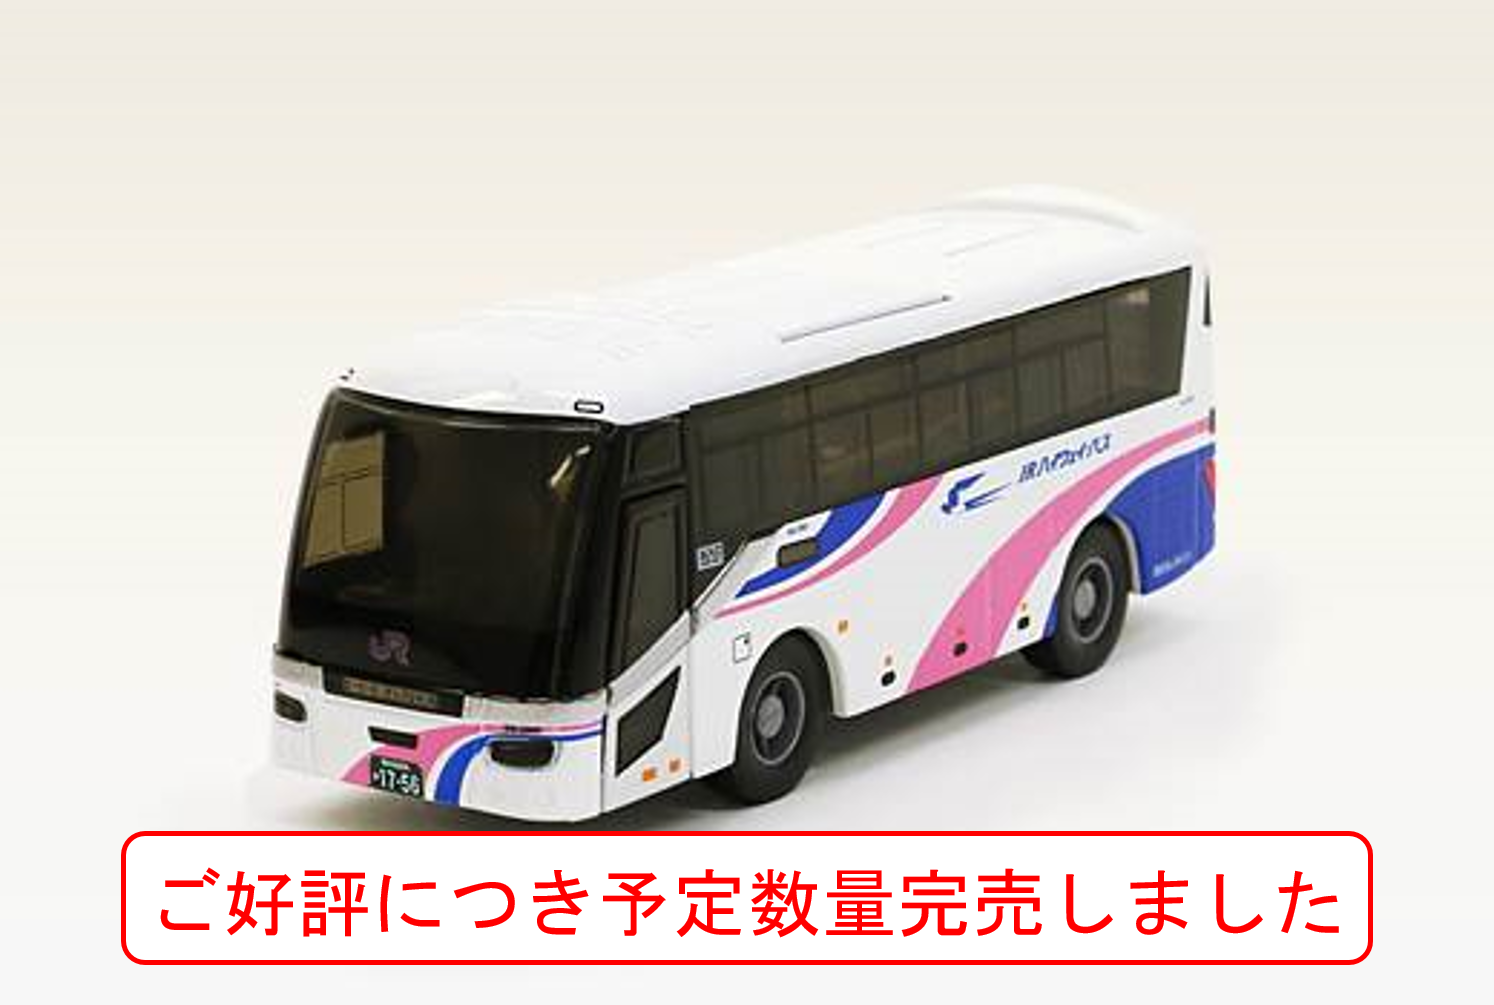 オリジナルグッズ通販 西日本jrバス 高速バス 夜行バス 定期観光バス バスツアー 一般路線バス 貸切バス